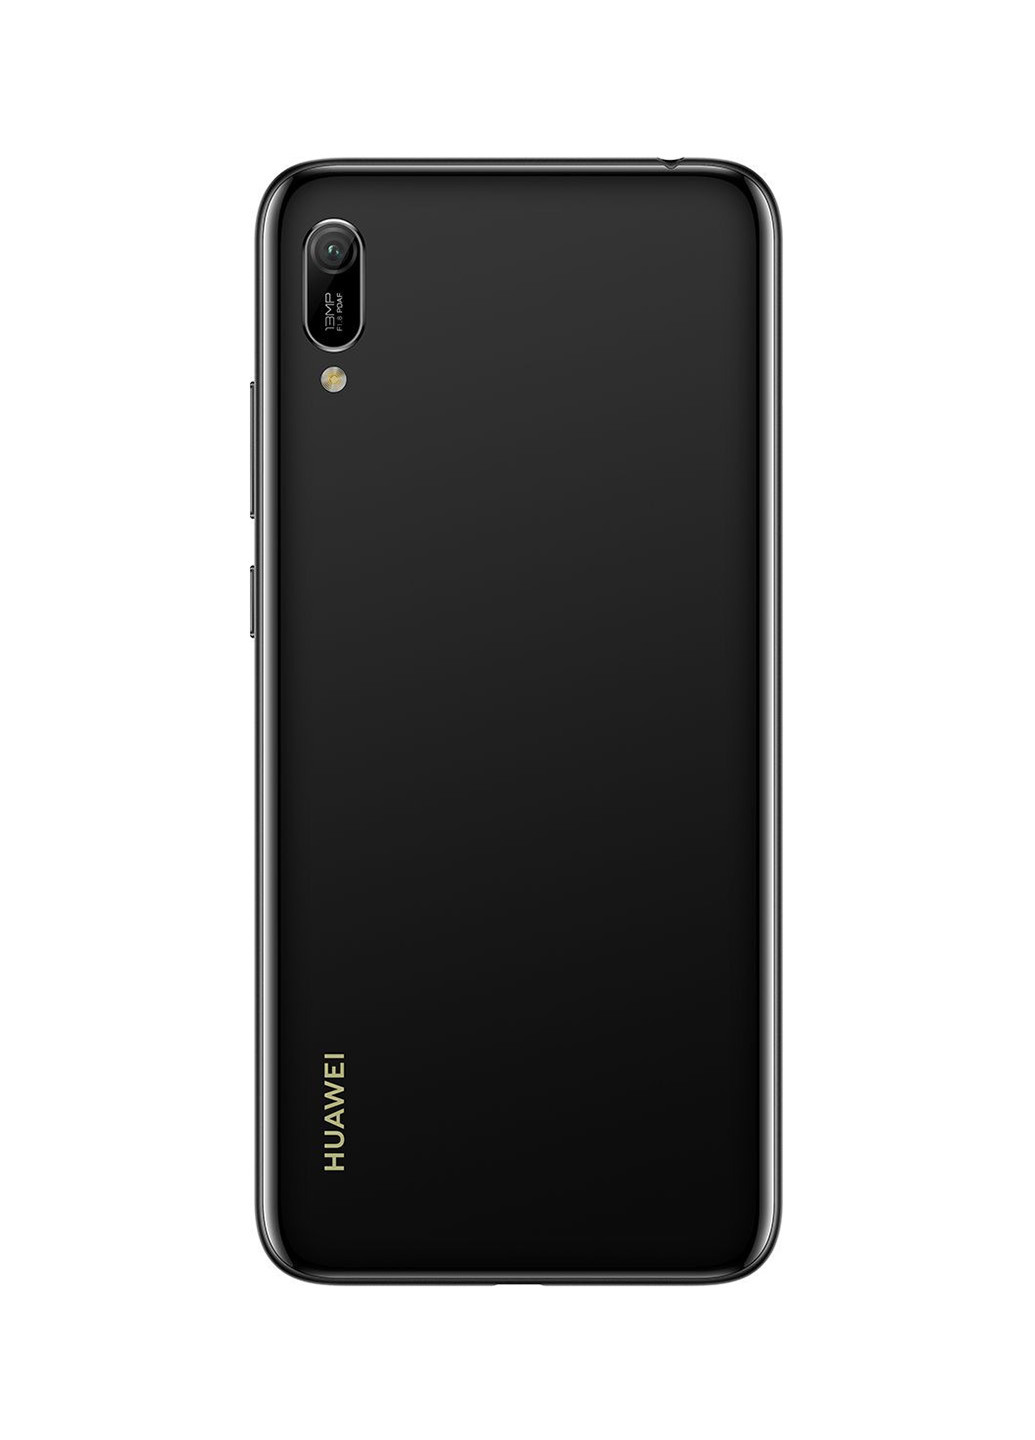 Смартфон Huawei y6 2019 2/32gb midnight black (mrd-lх1) (163174118)